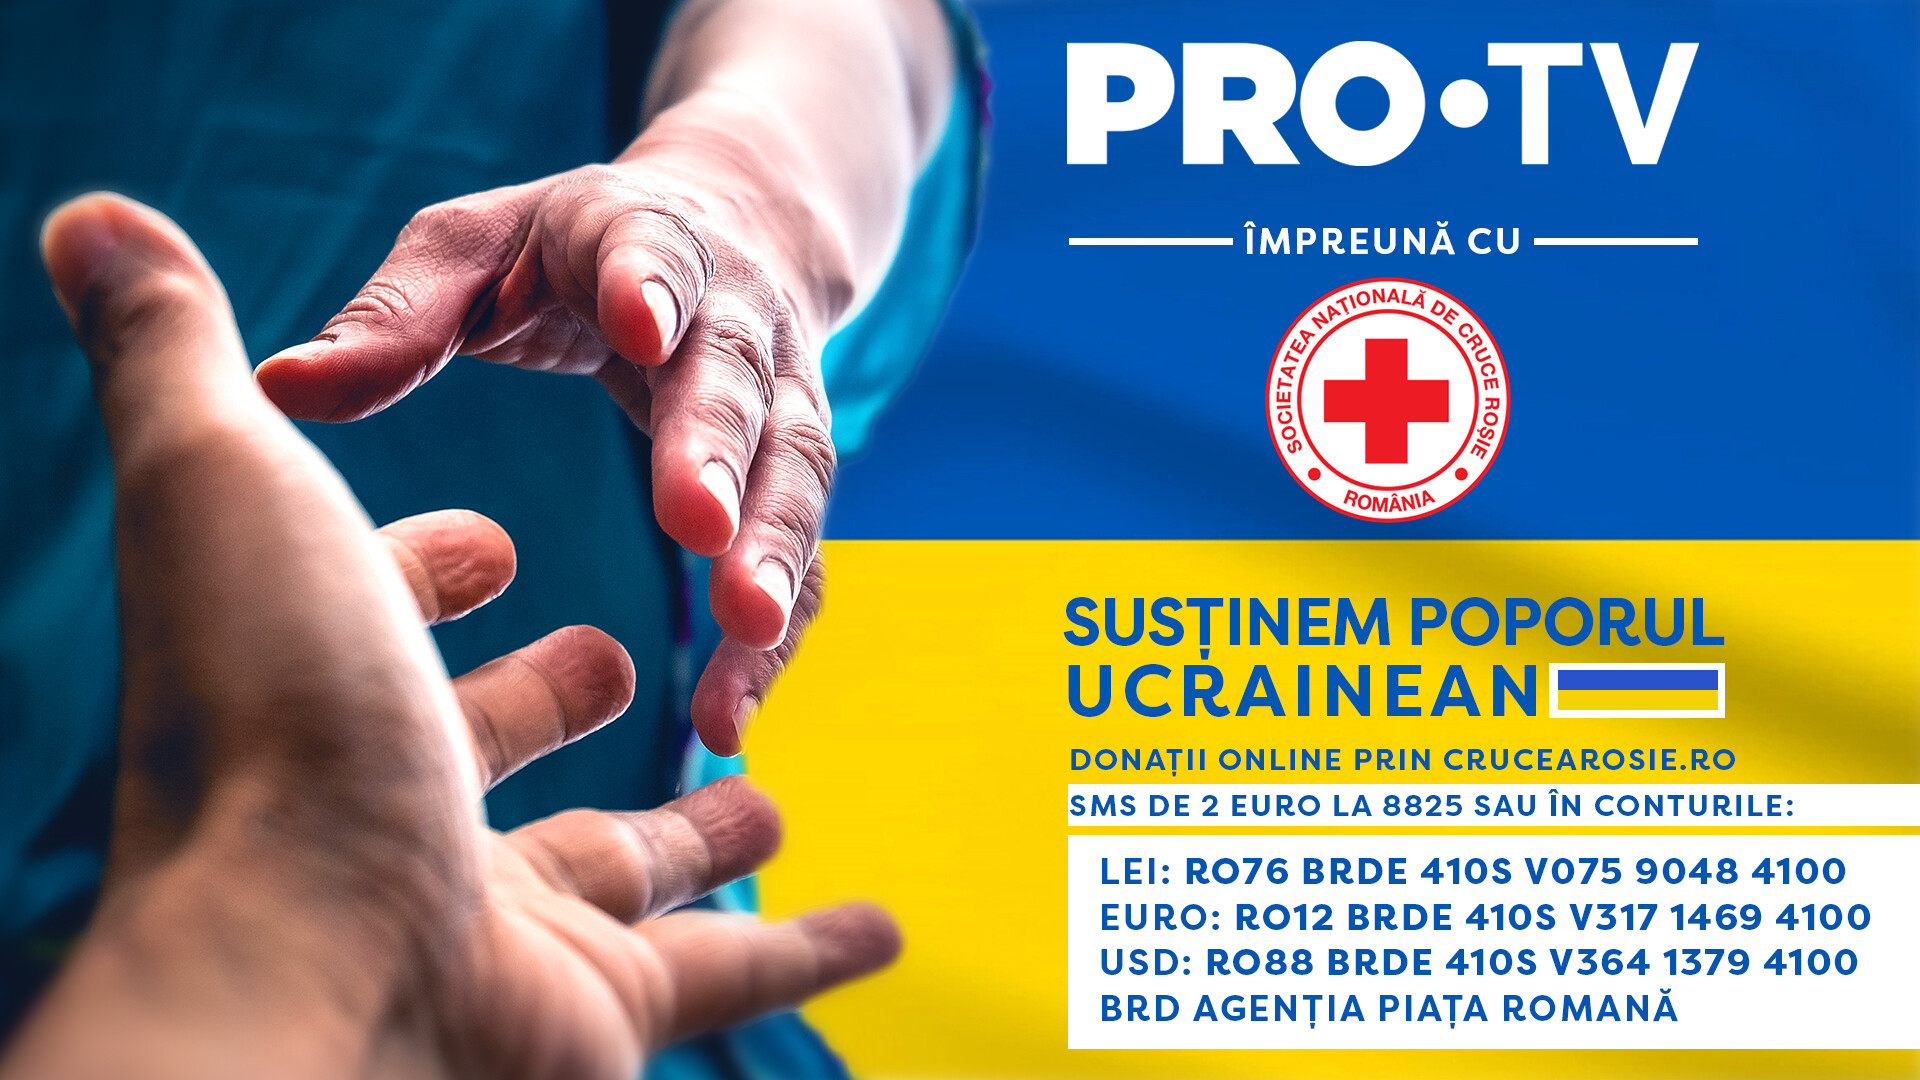 PRO TV și Crucea Roșie susțin poporul ucrainean. Conturile în care puteți dona